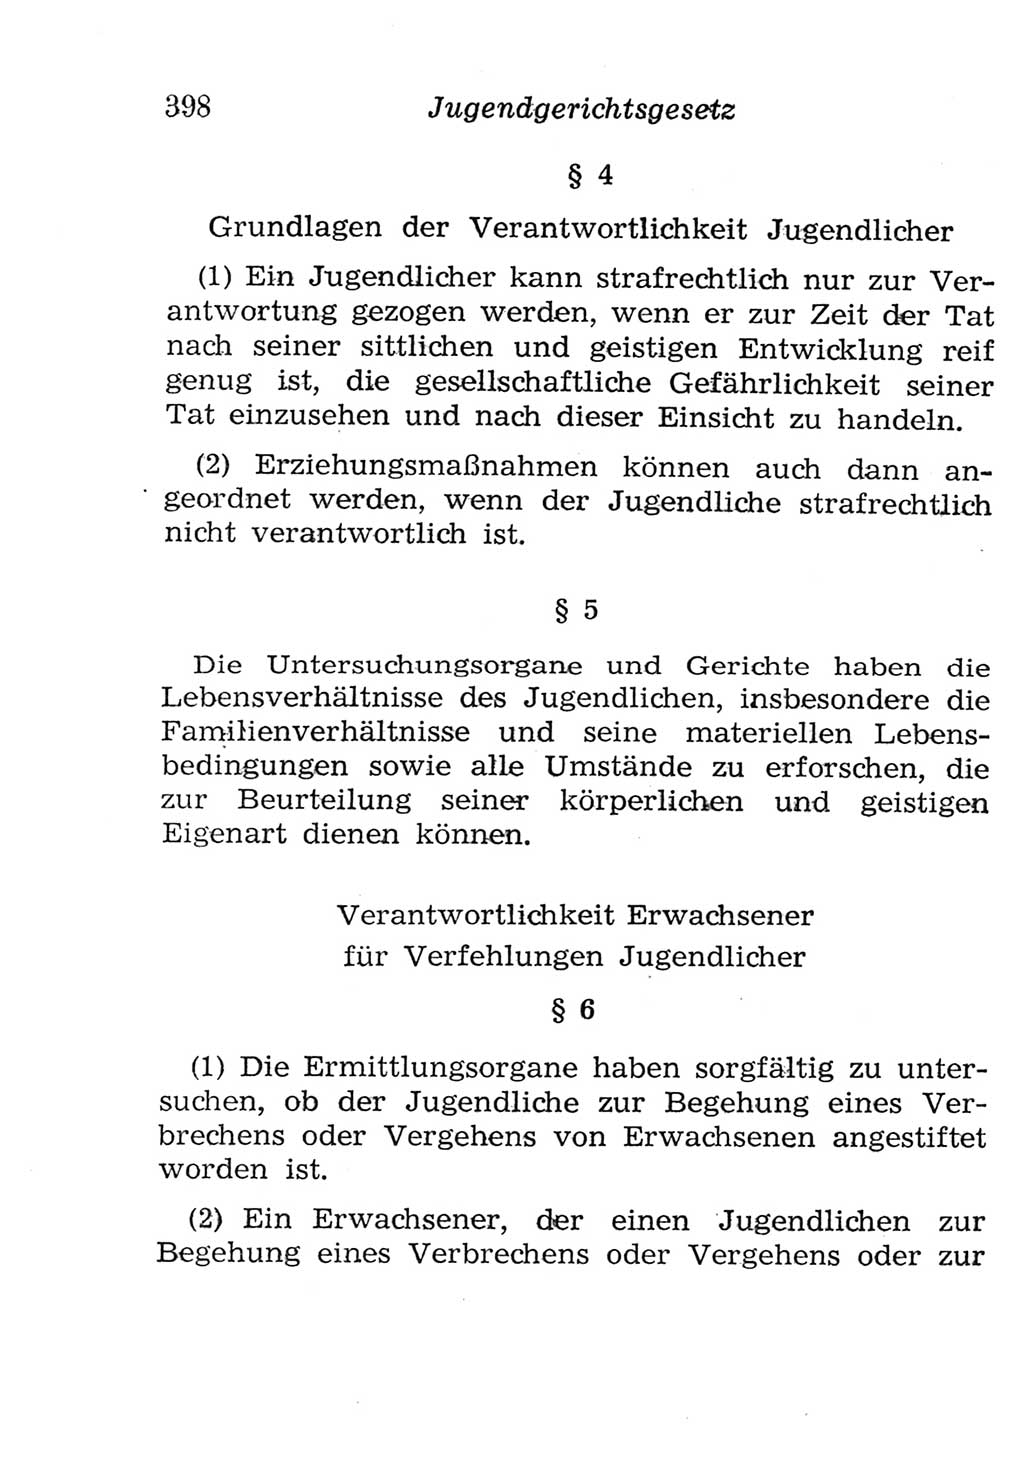 Strafgesetzbuch (StGB) und andere Strafgesetze [Deutsche Demokratische Republik (DDR)] 1957, Seite 398 (StGB Strafges. DDR 1957, S. 398)